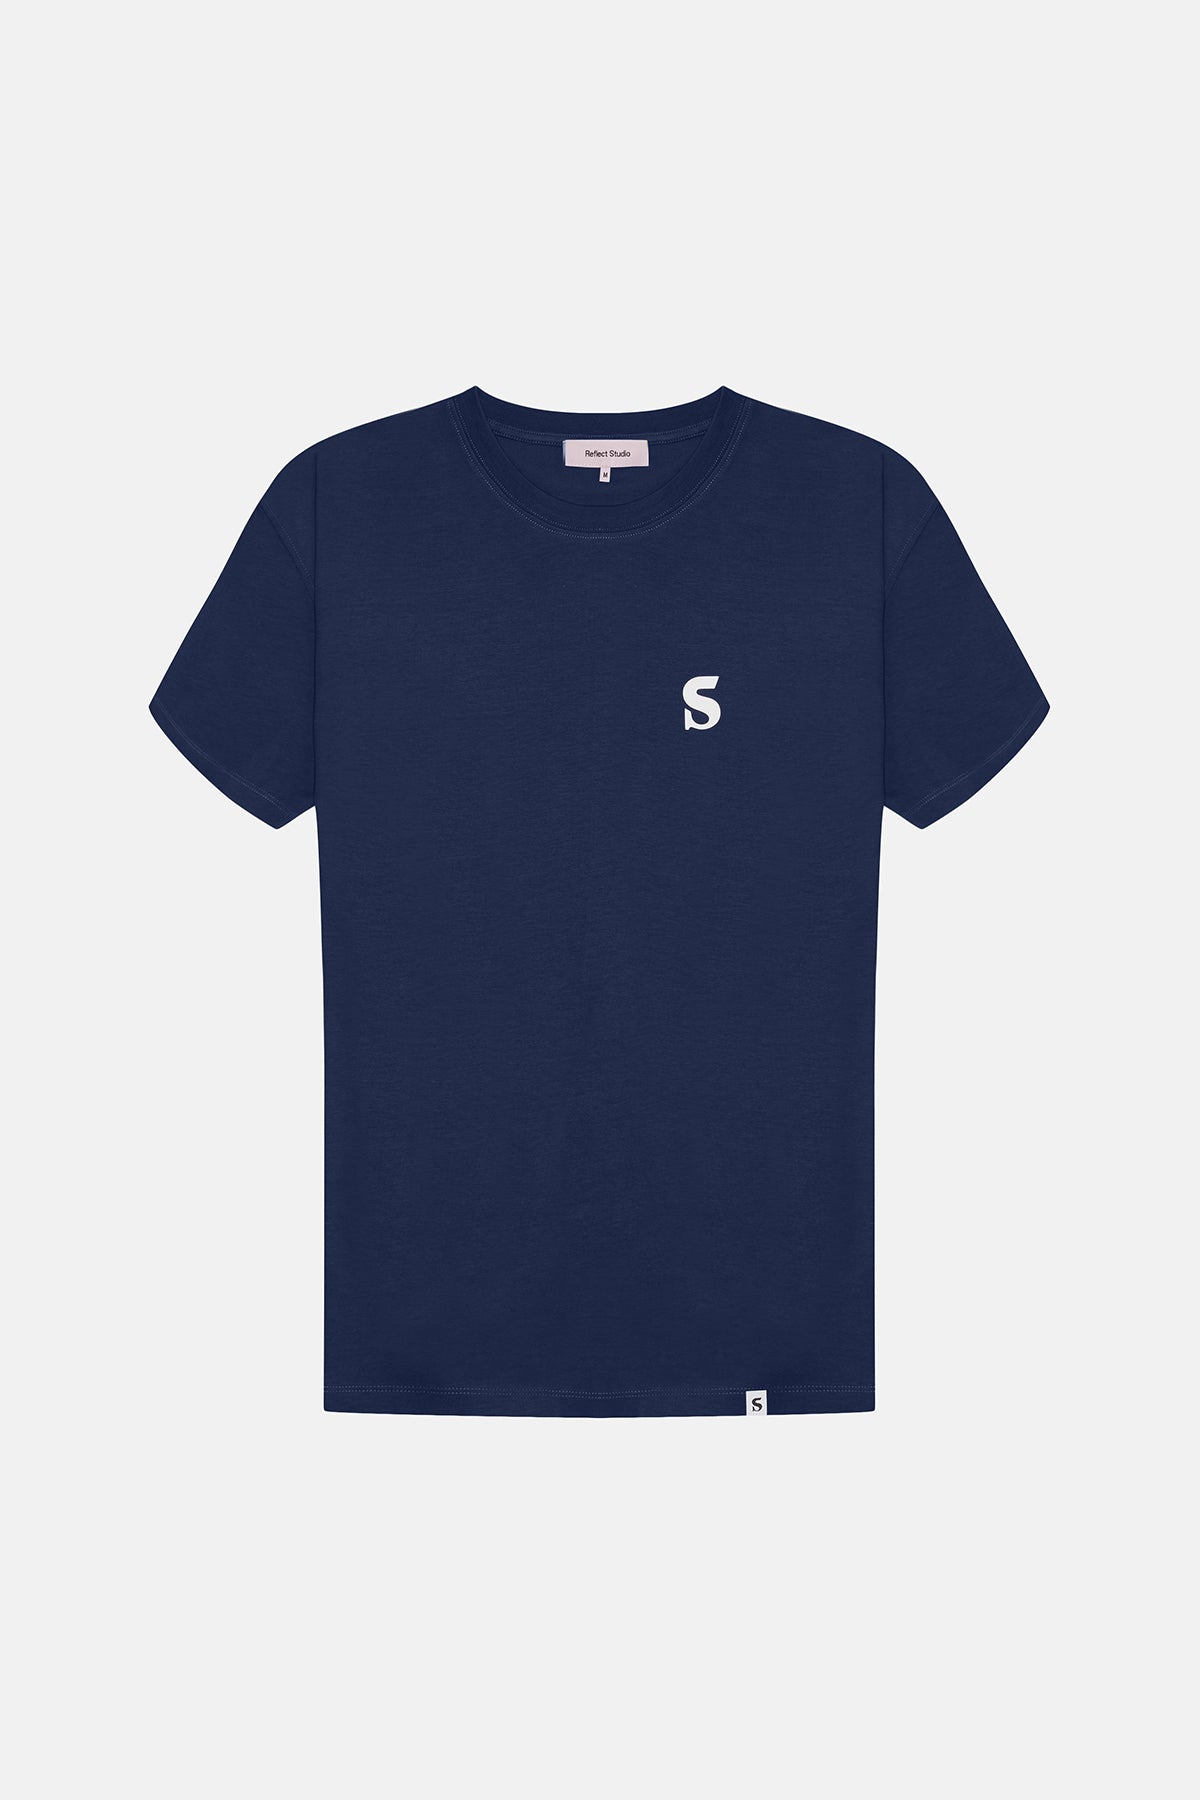 Issue #80 Premium T-Shirt - Lacivert